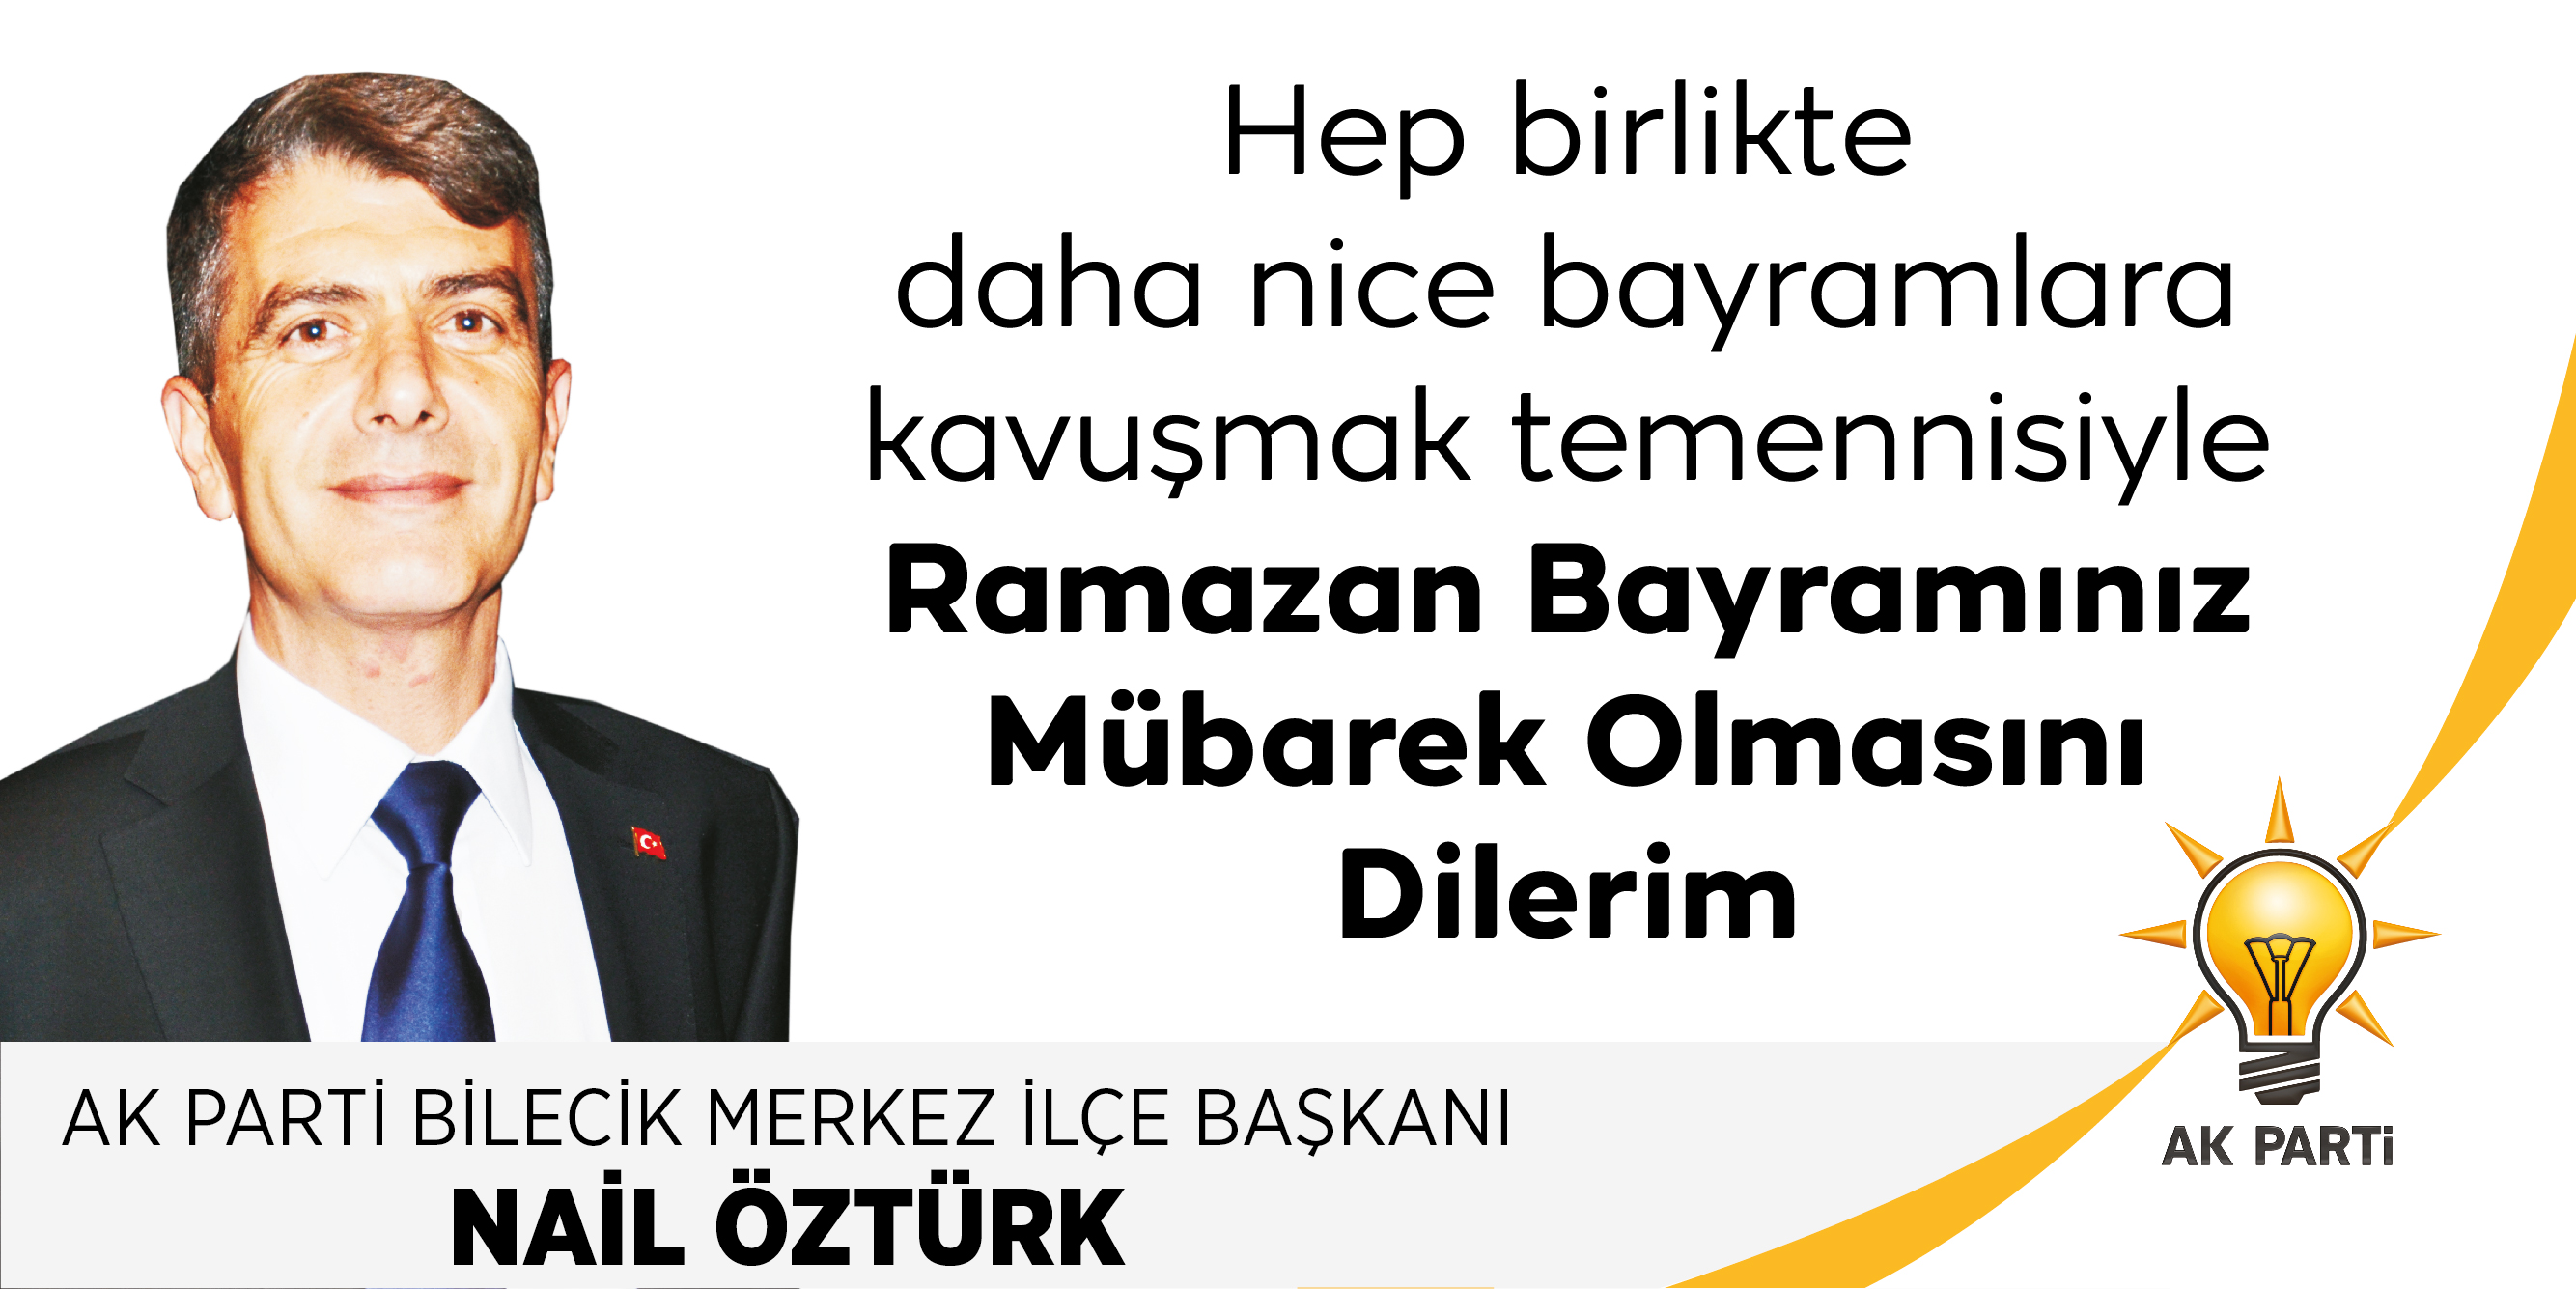 AK Parti Merkez İlçe Başkanı Nail Öztürk'ün Ramazan Bayramı Kutlama Mesajı